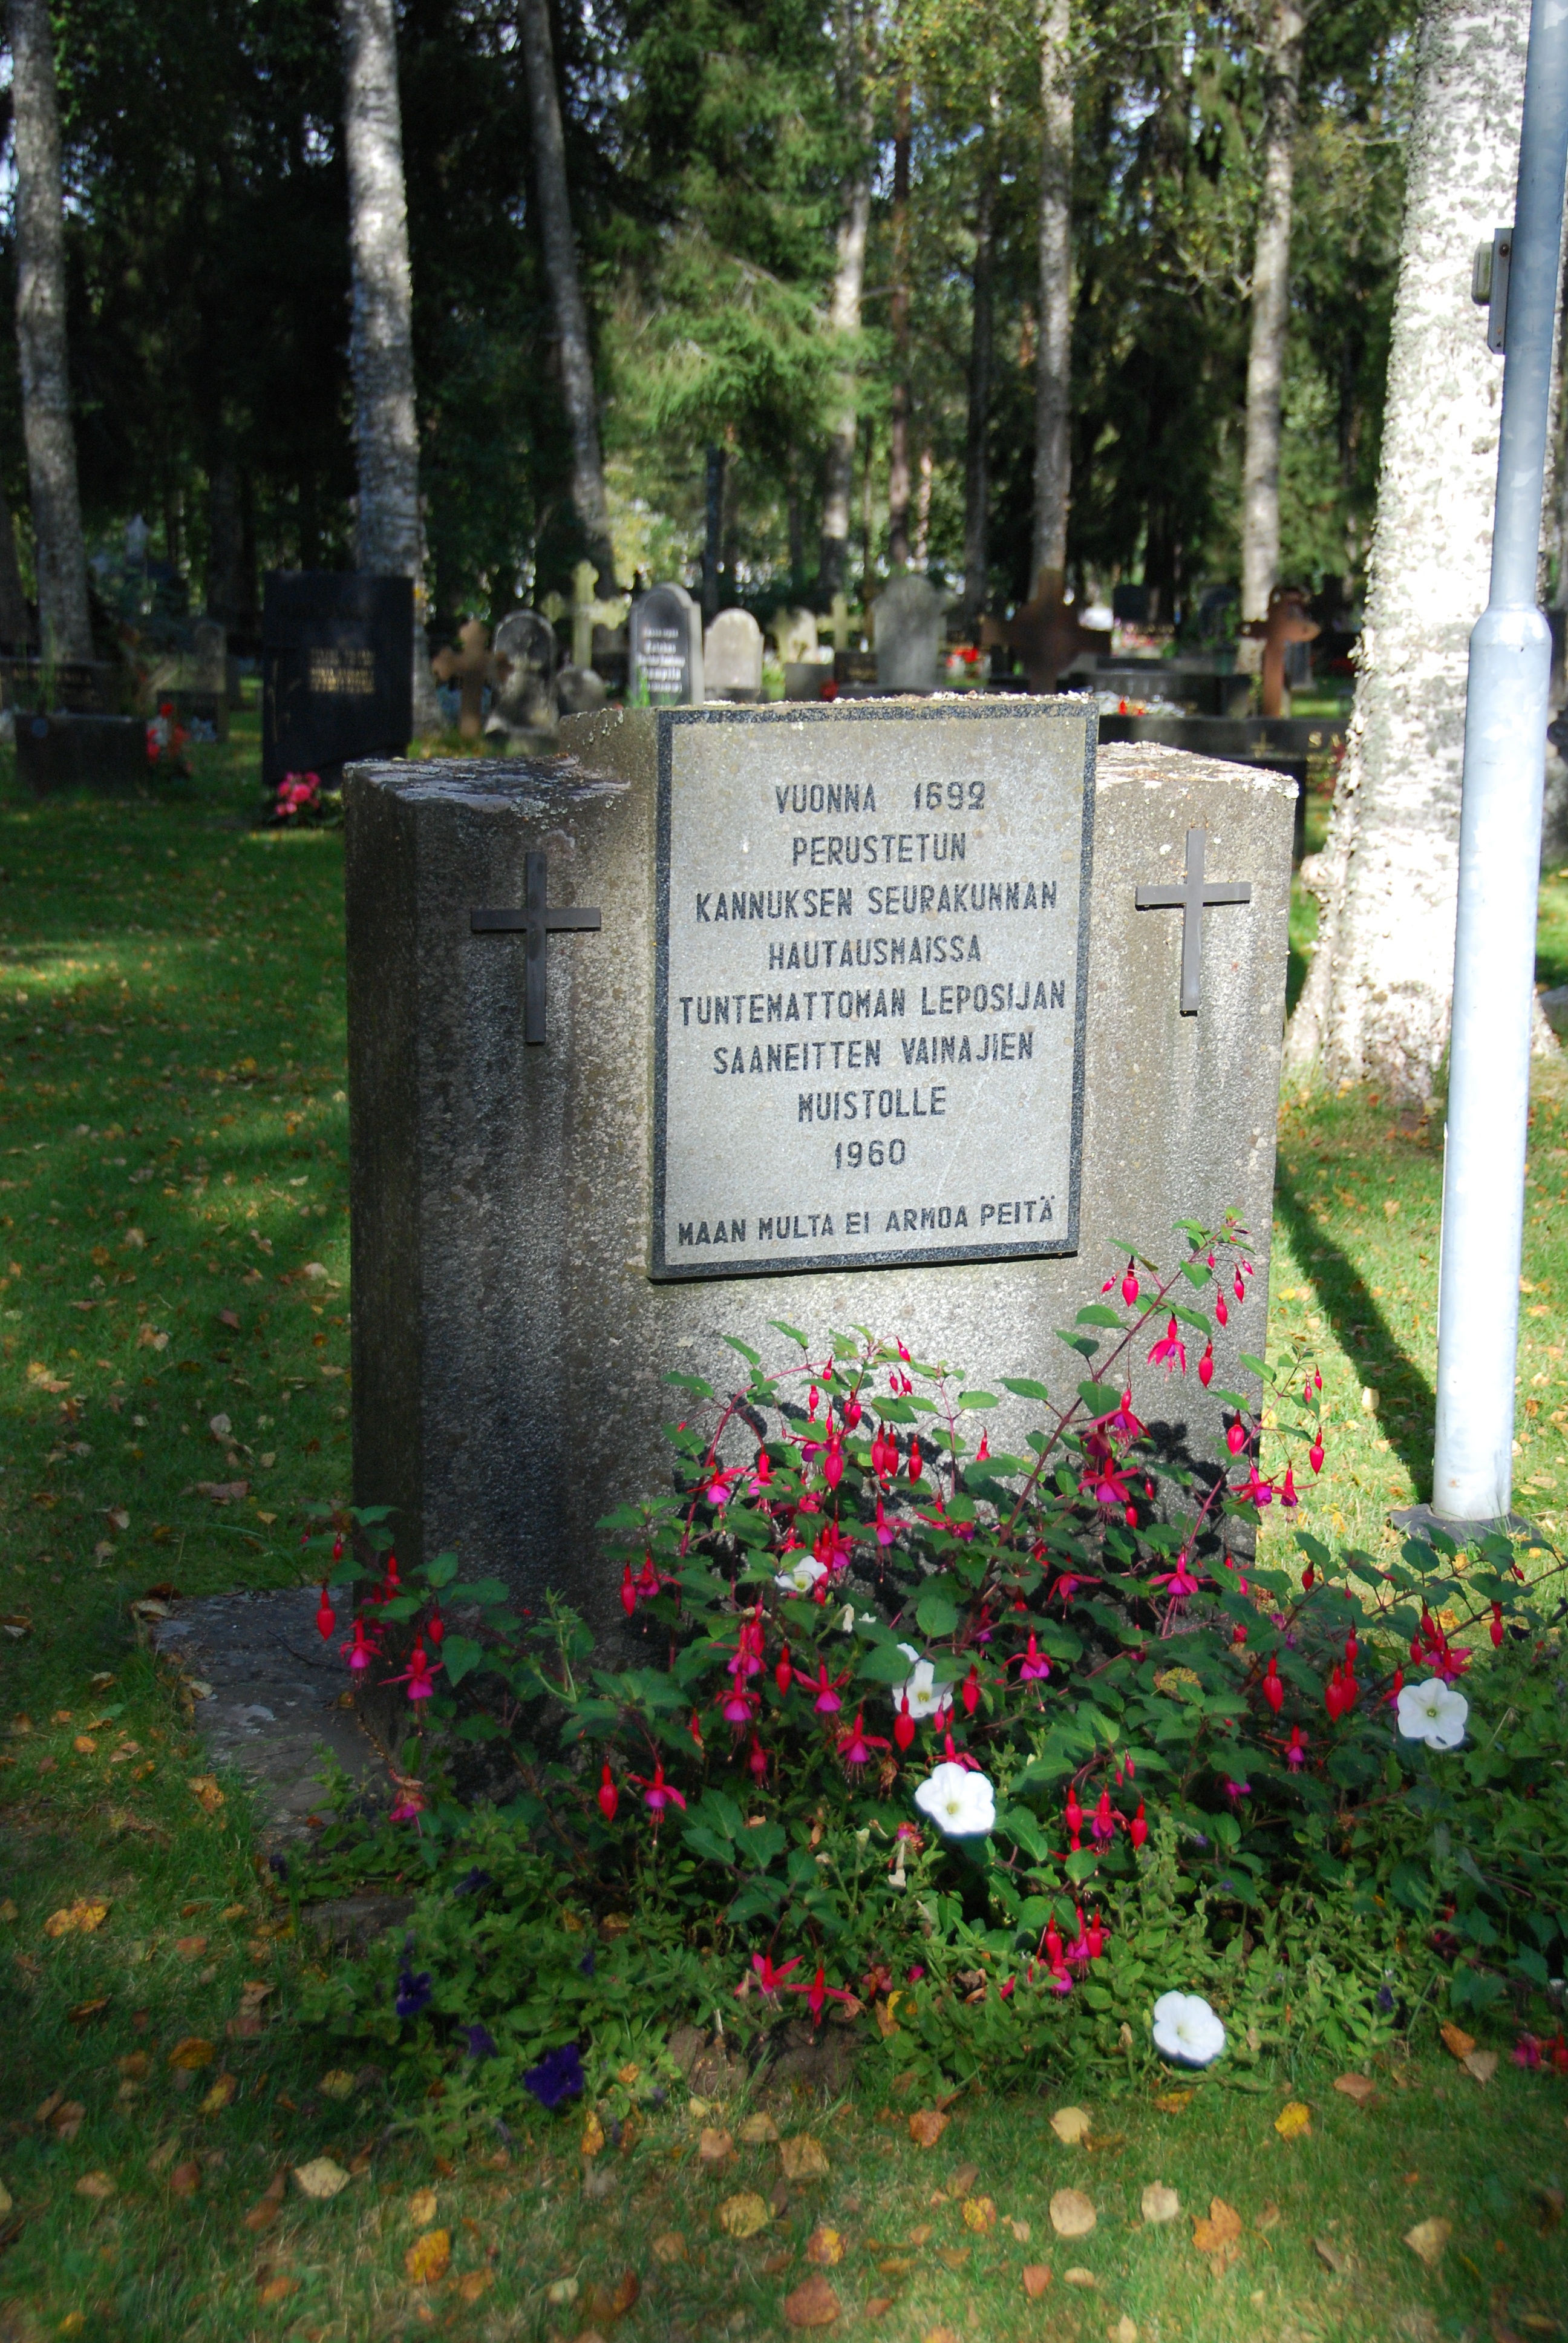 Muistokivi, teksti: vuonna 1692 perustetun Kannuksen seurakunnan hautausmaissa tuntemattoman leposijan saaneitten vainajien muistolle 1960.